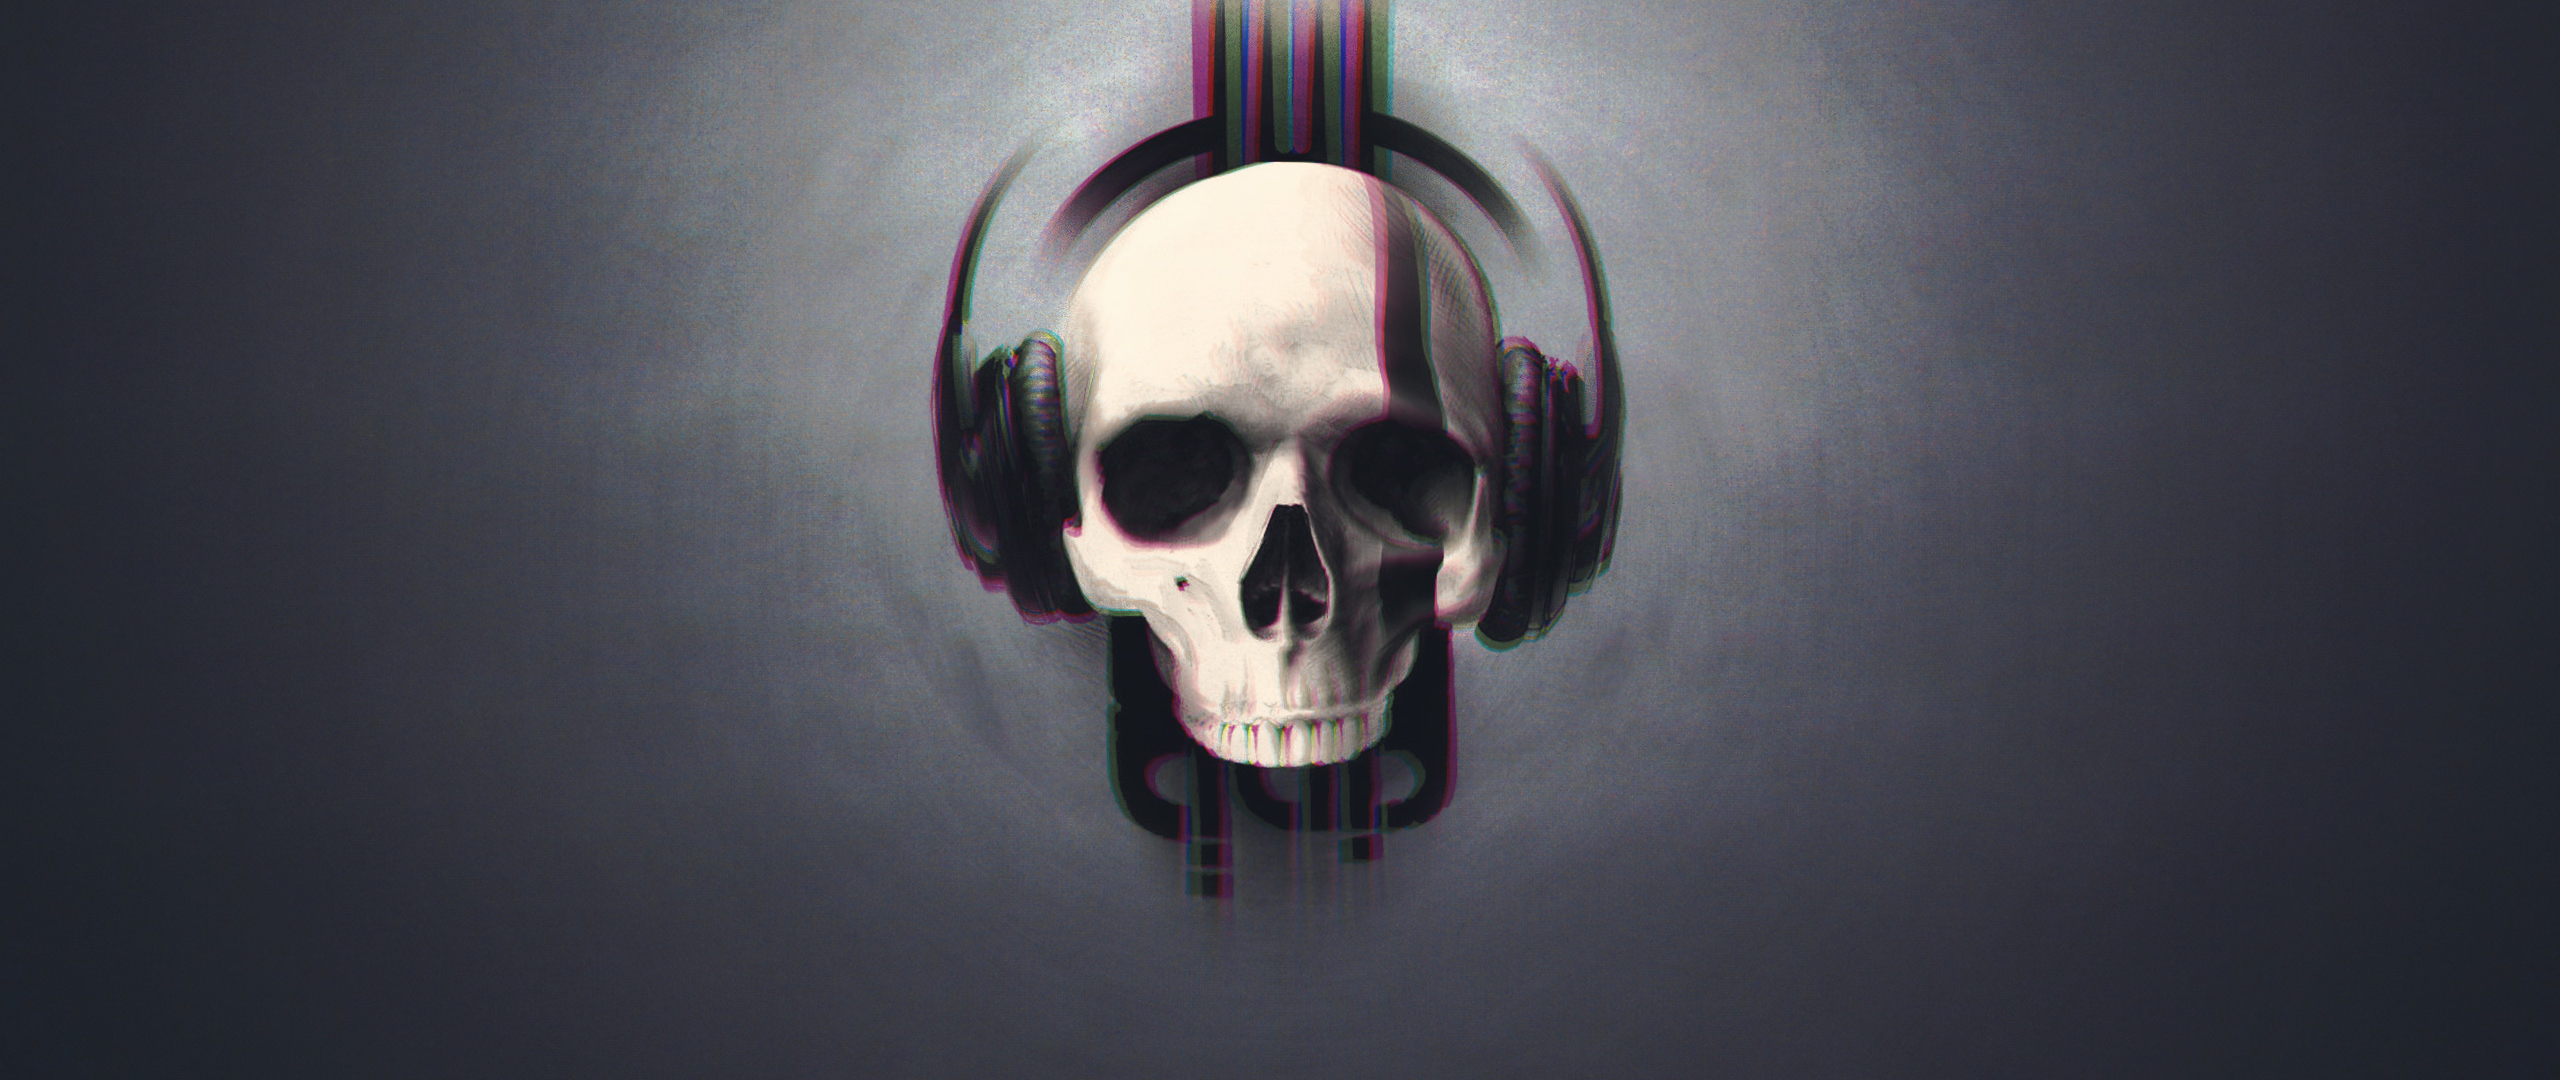 Download 2560x1080 wallpaper skull, glitch art, minimal ...